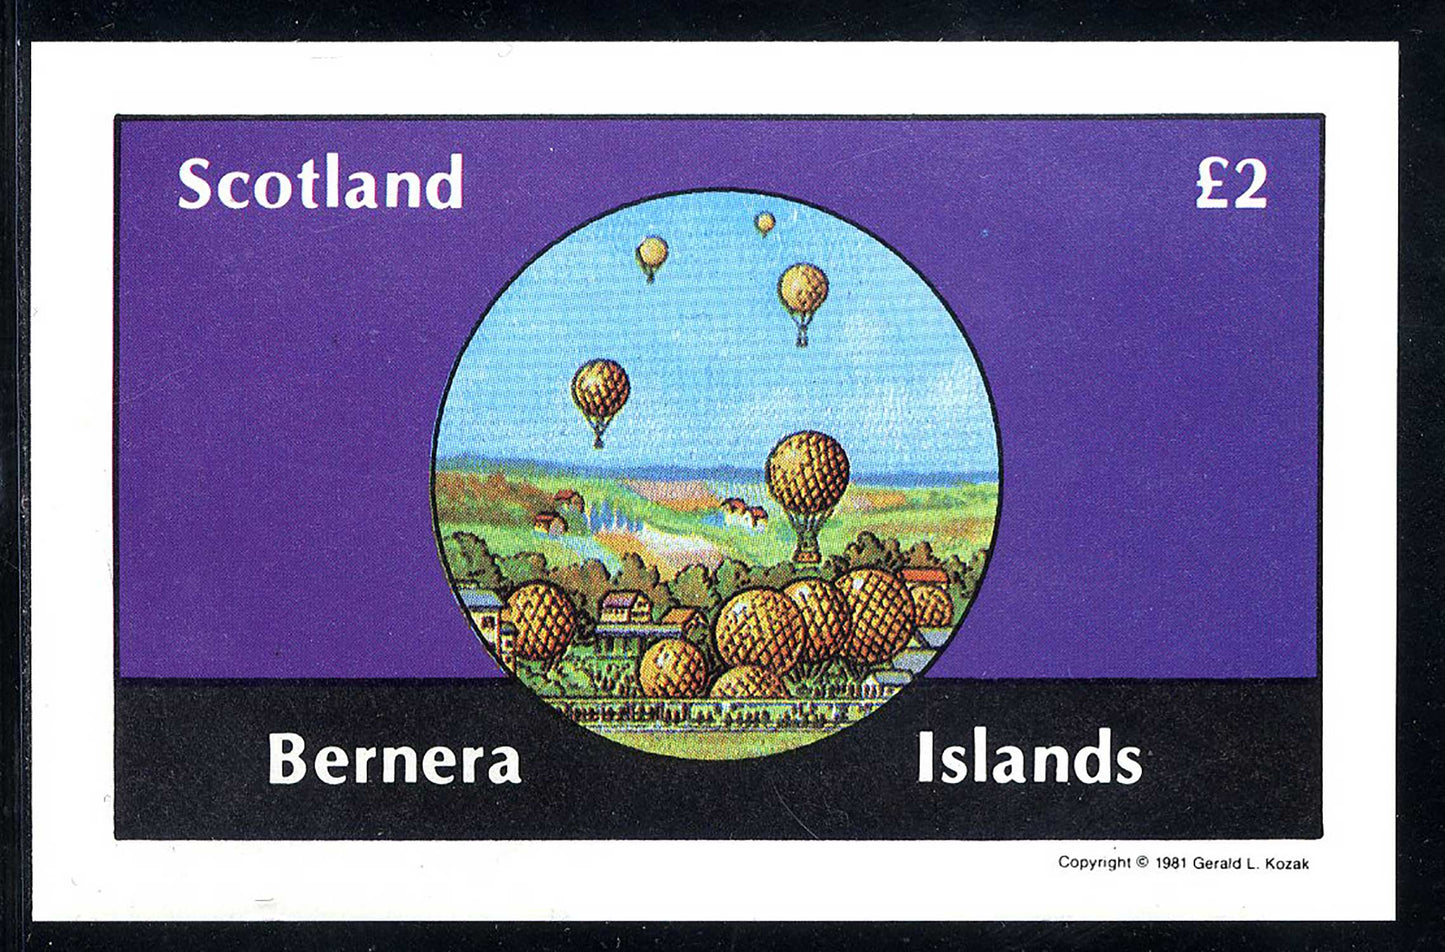 Bernera Balloons, Airships, And Airplanes £2